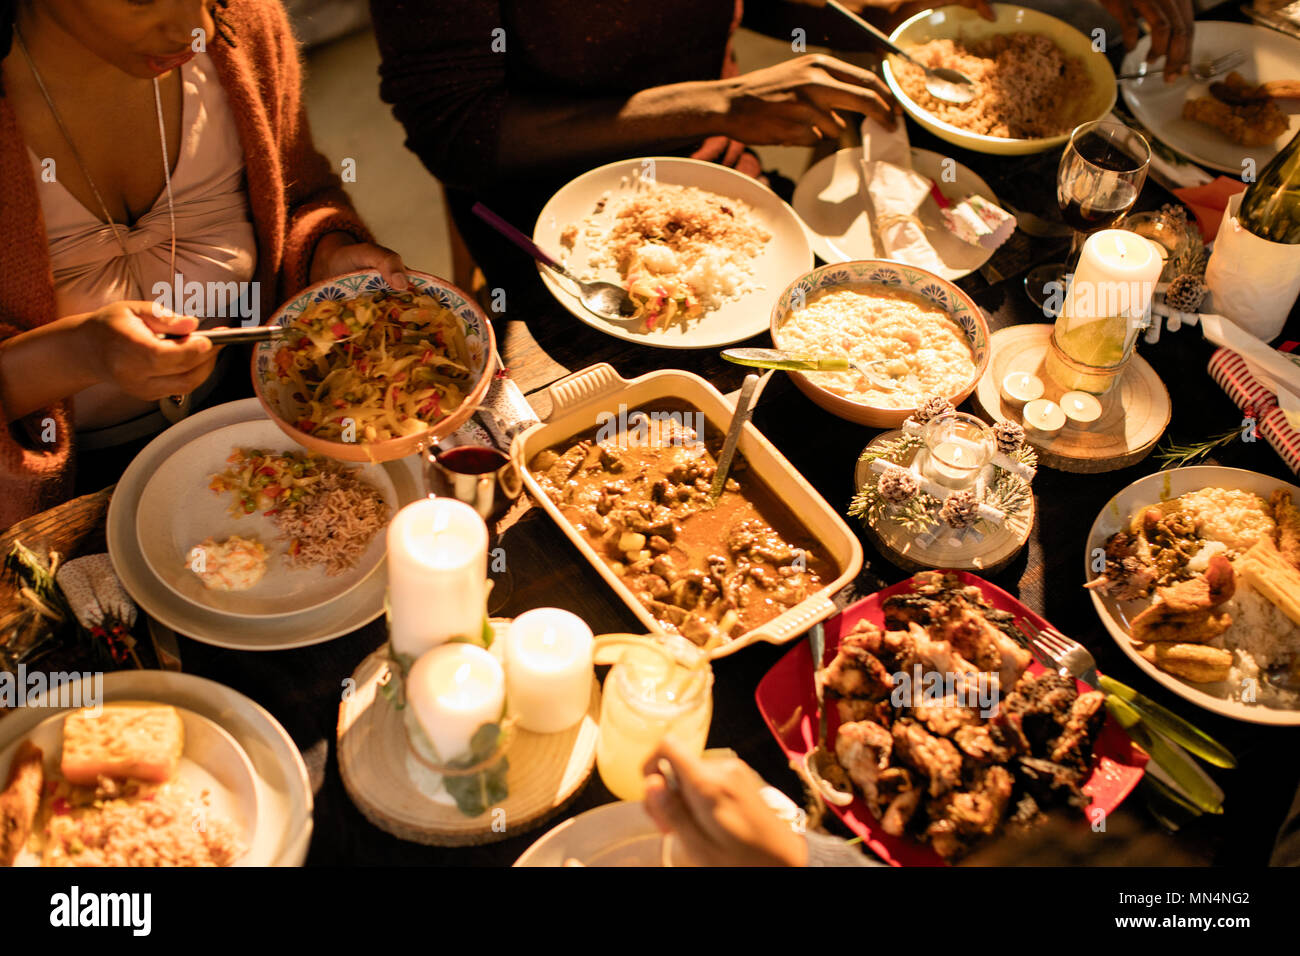 Caribbean food on Christmas dinner table Stock Photo